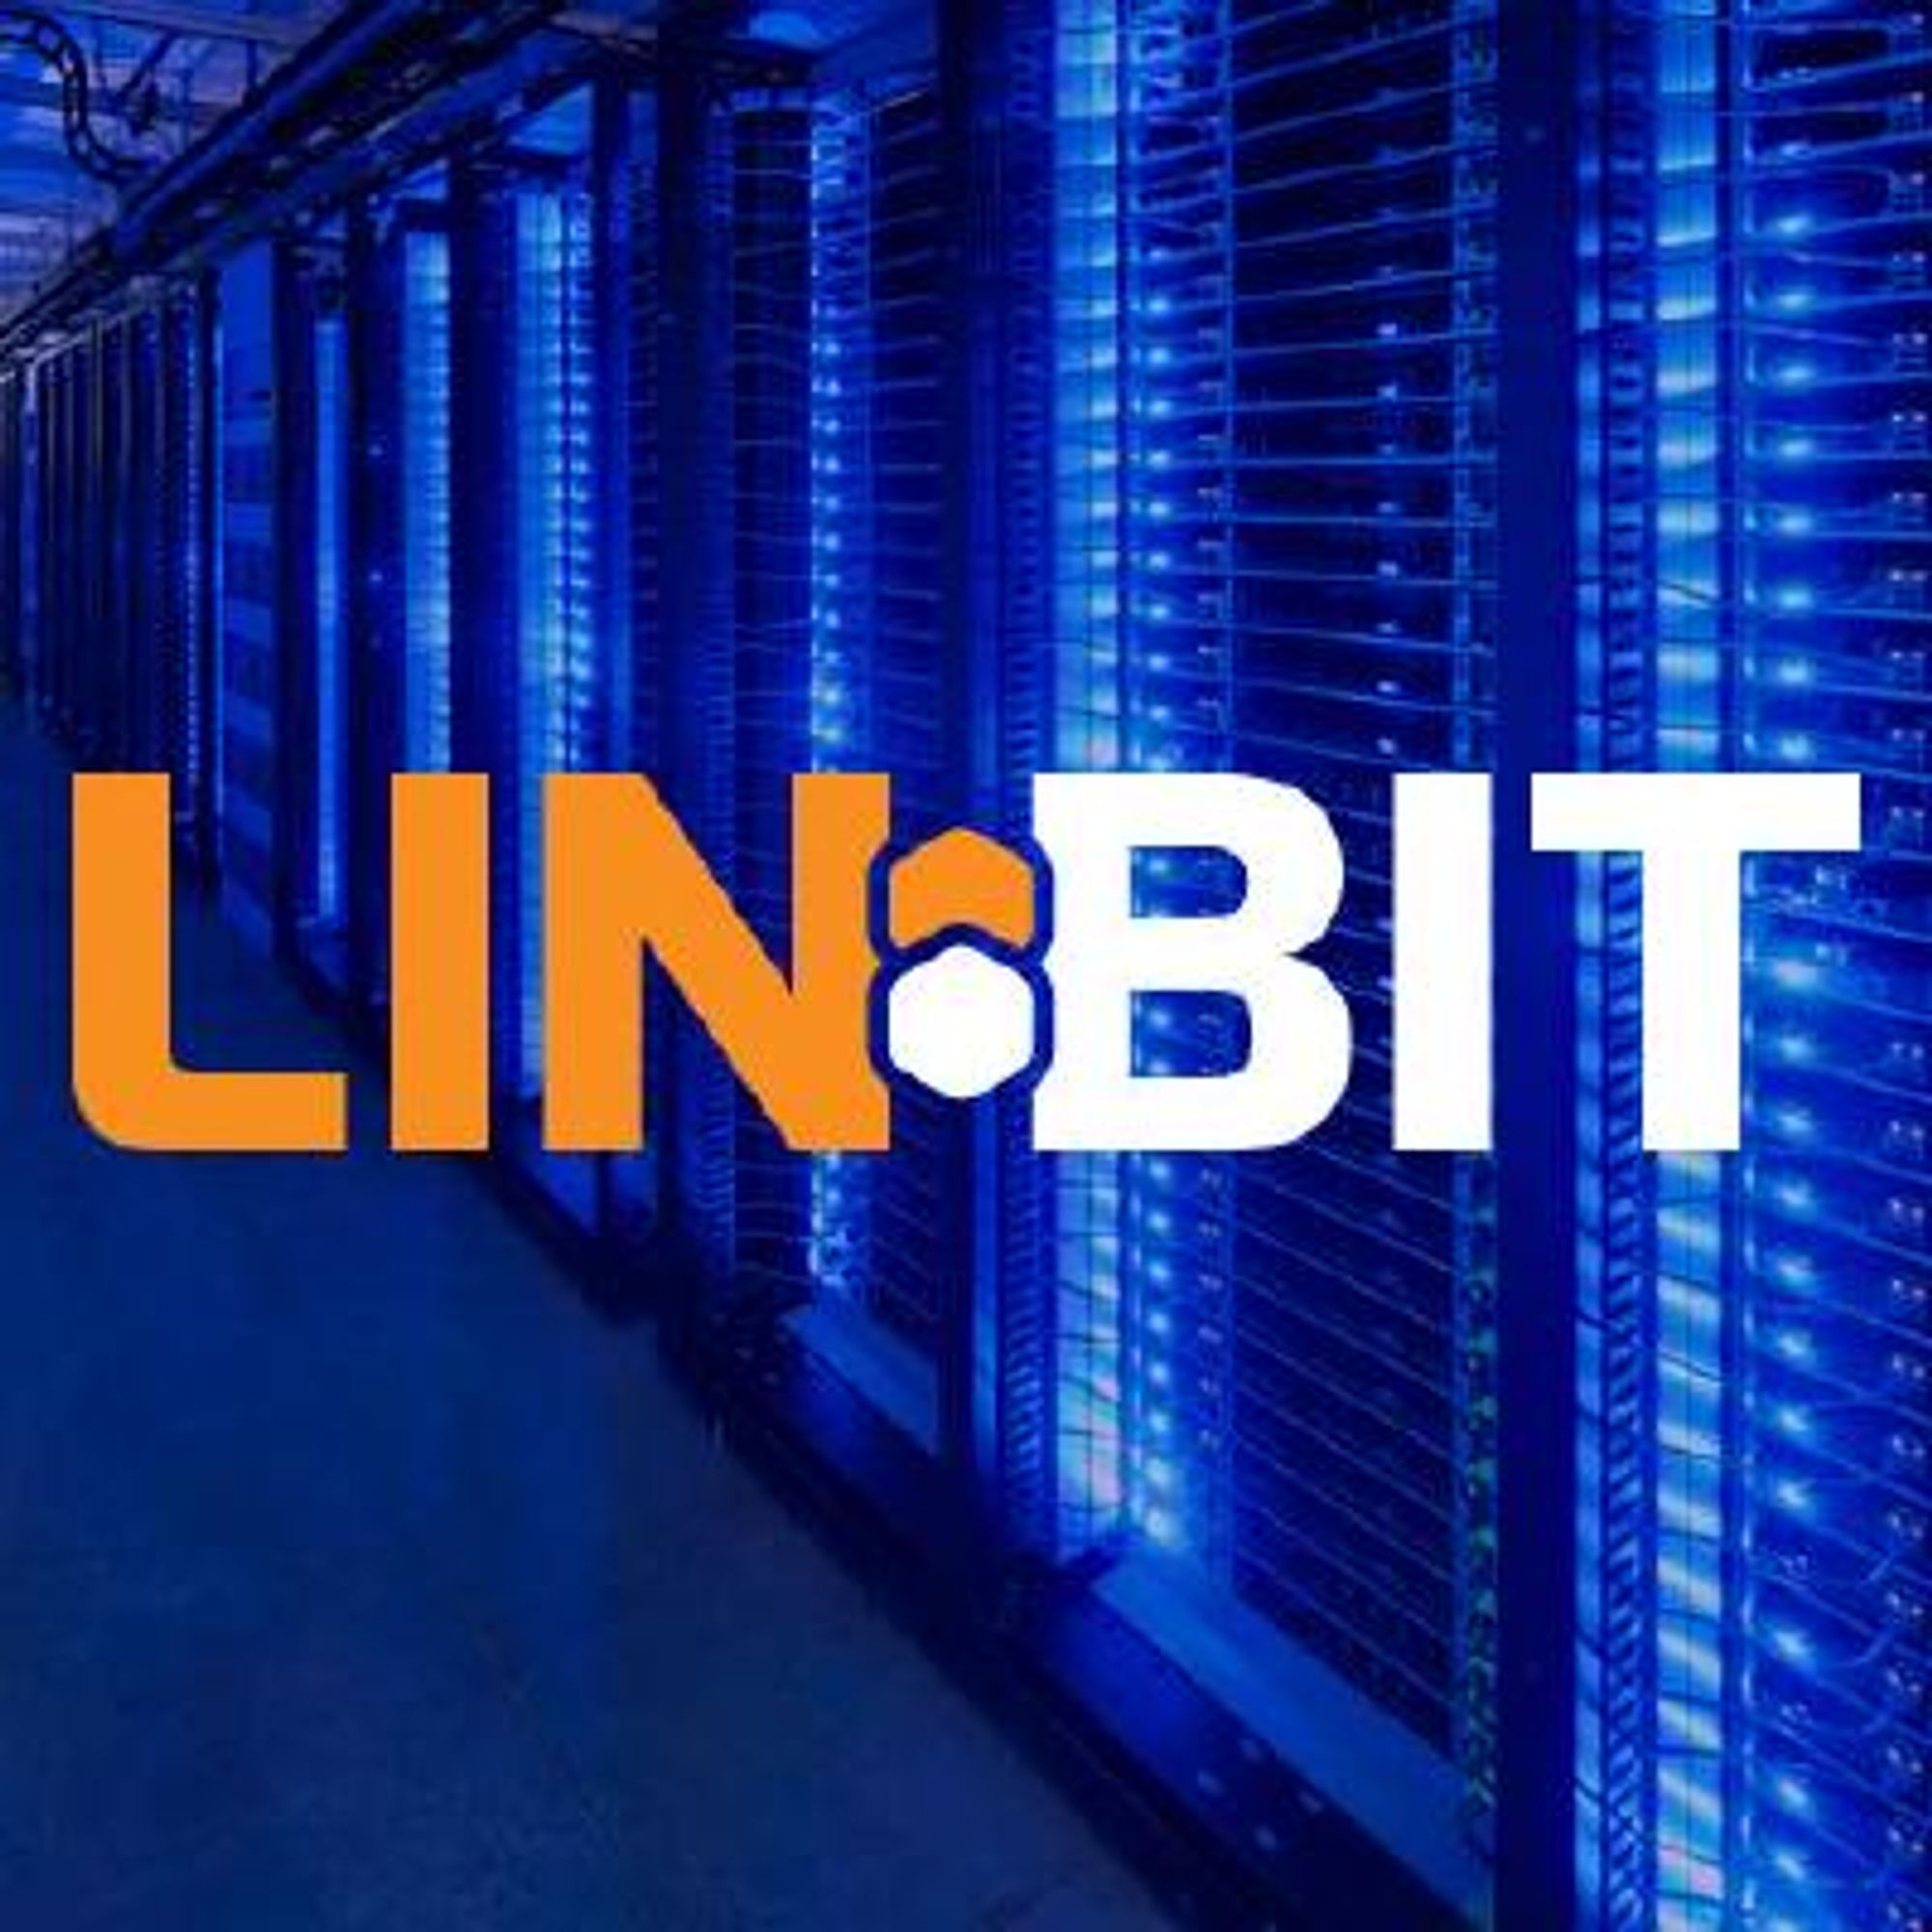 LINBIT/drbd